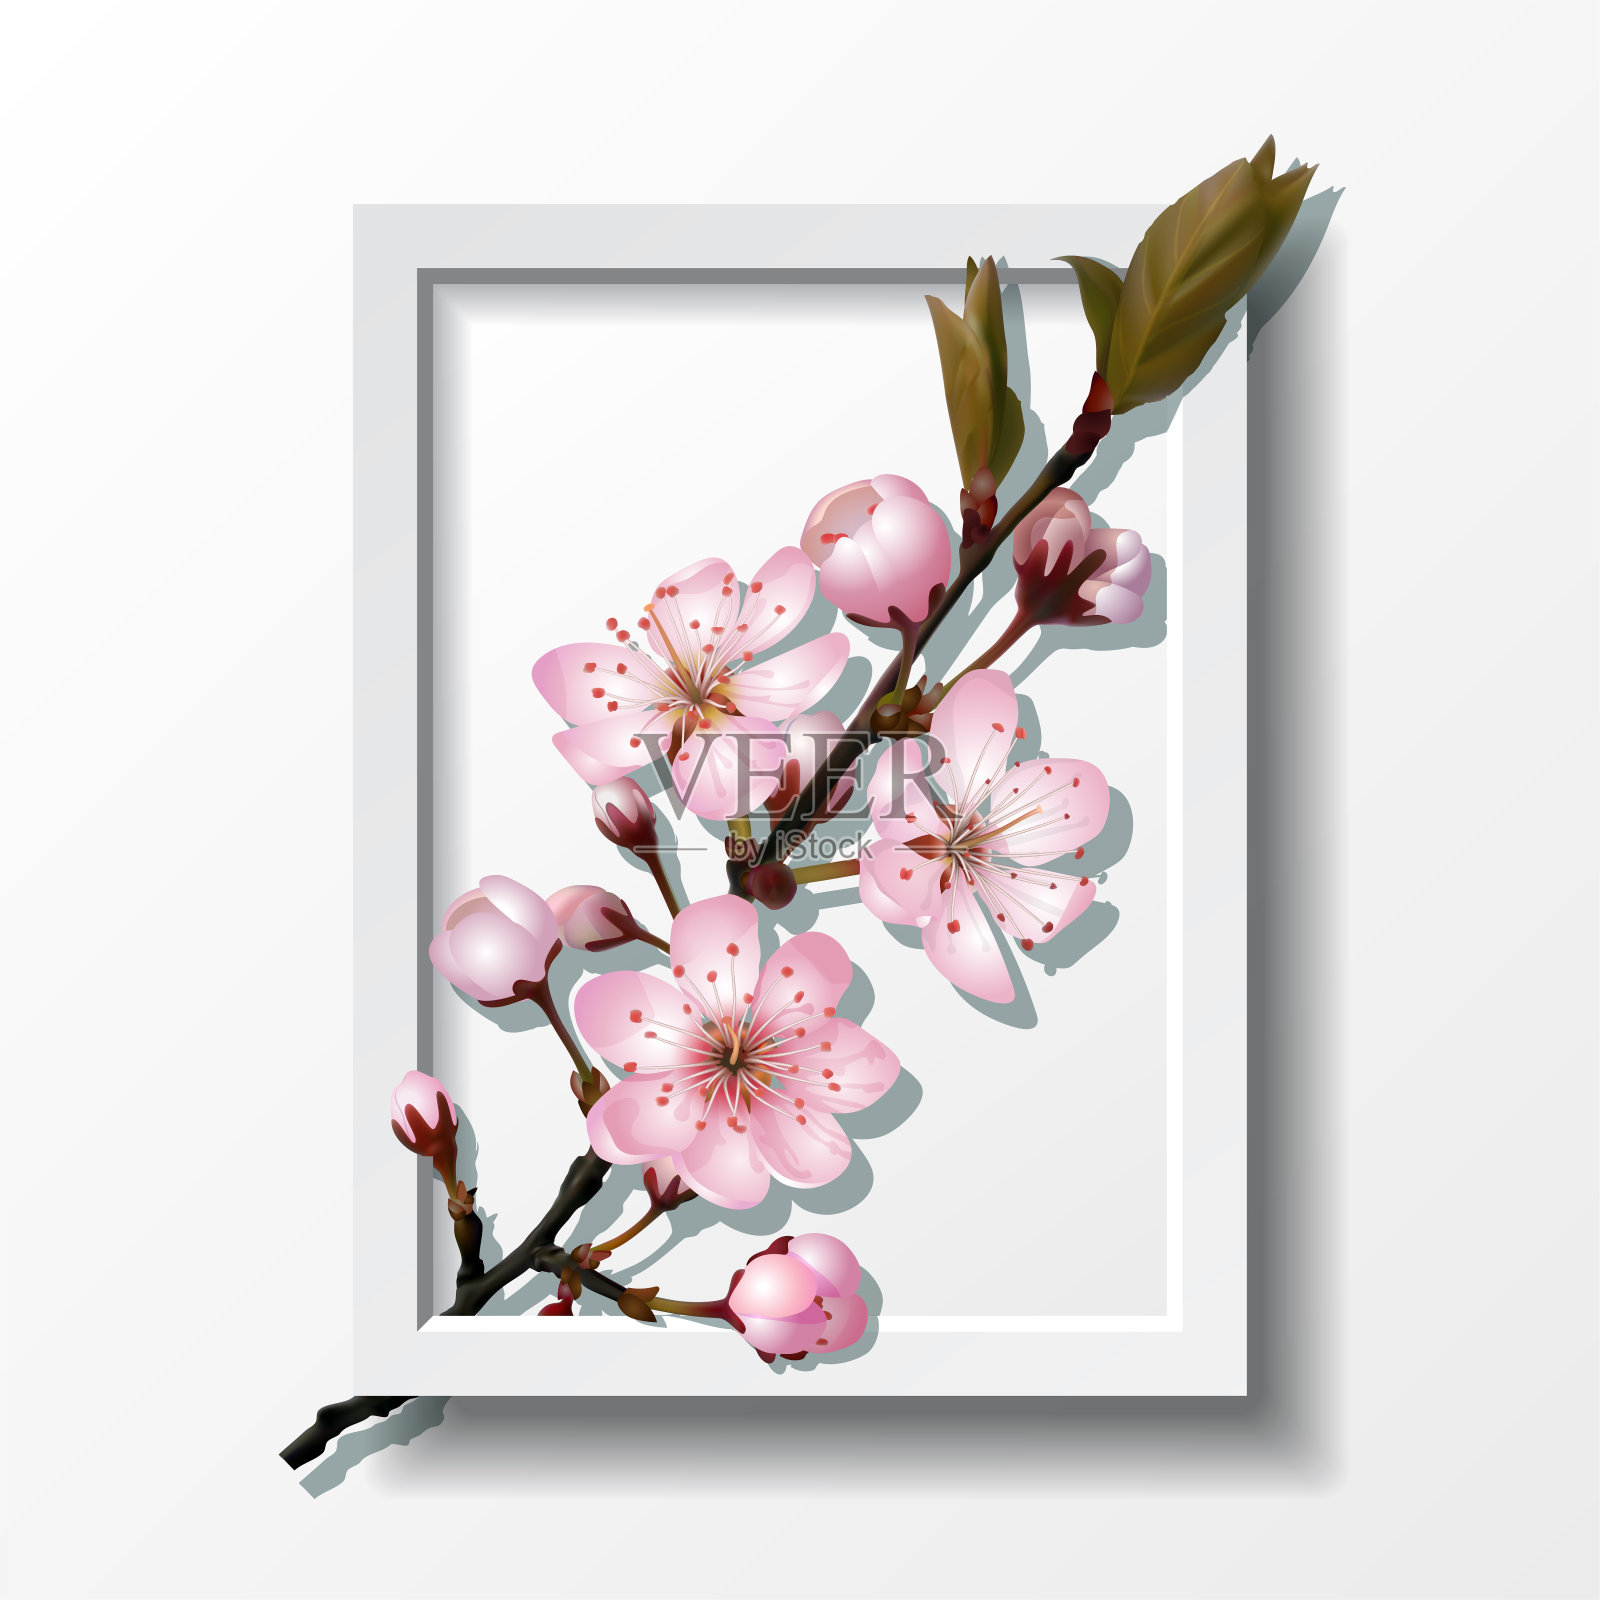 镜框内的粉红色樱花枝设计元素图片